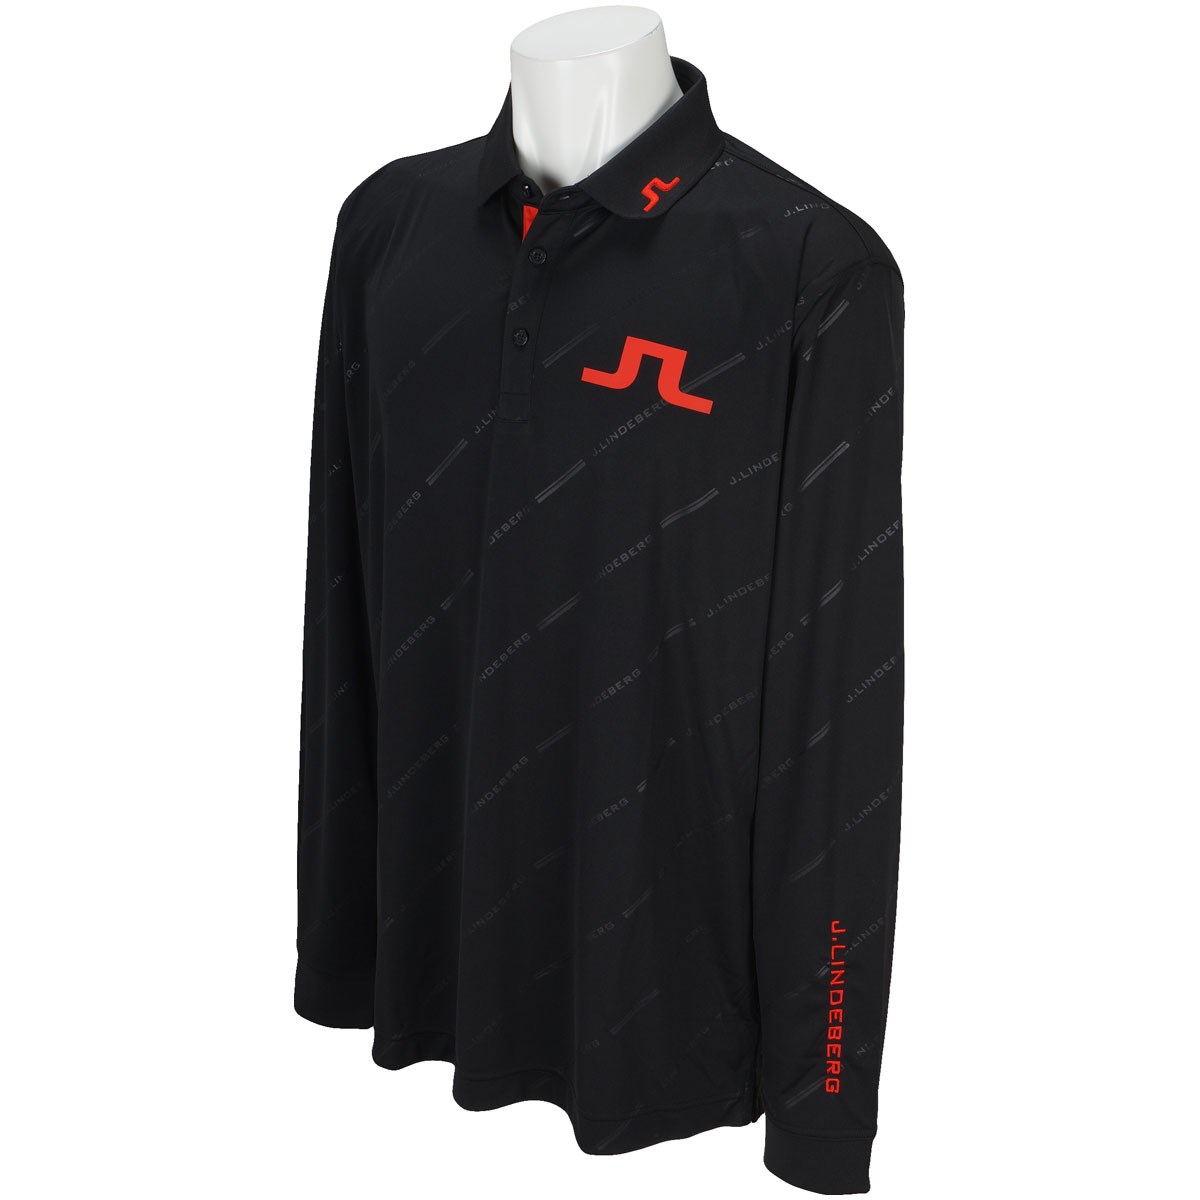 [GDO限定モデル] J.リンドバーグ TOUR TECH REG TX Jersey +(Tonal debossed graphic on) 長袖ポロシャツ ゴルフウェアの大画像